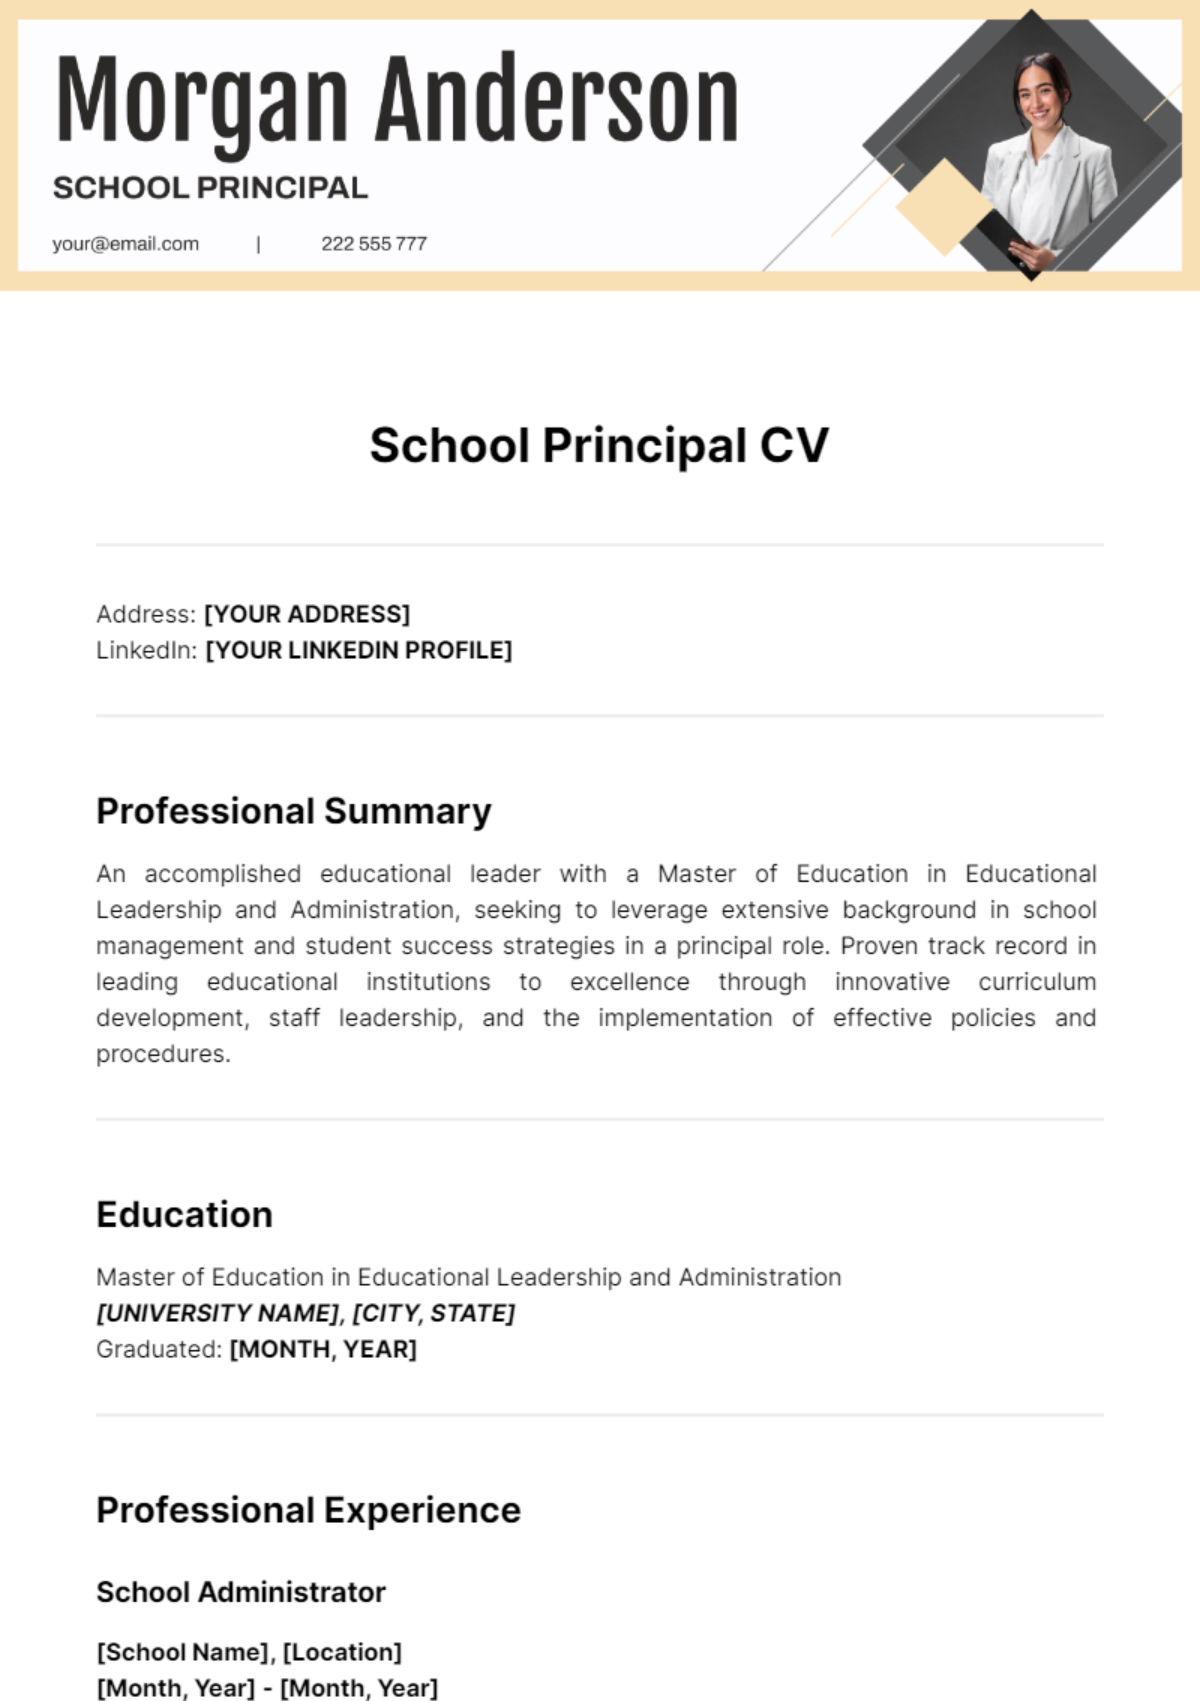 School Principal CV Template